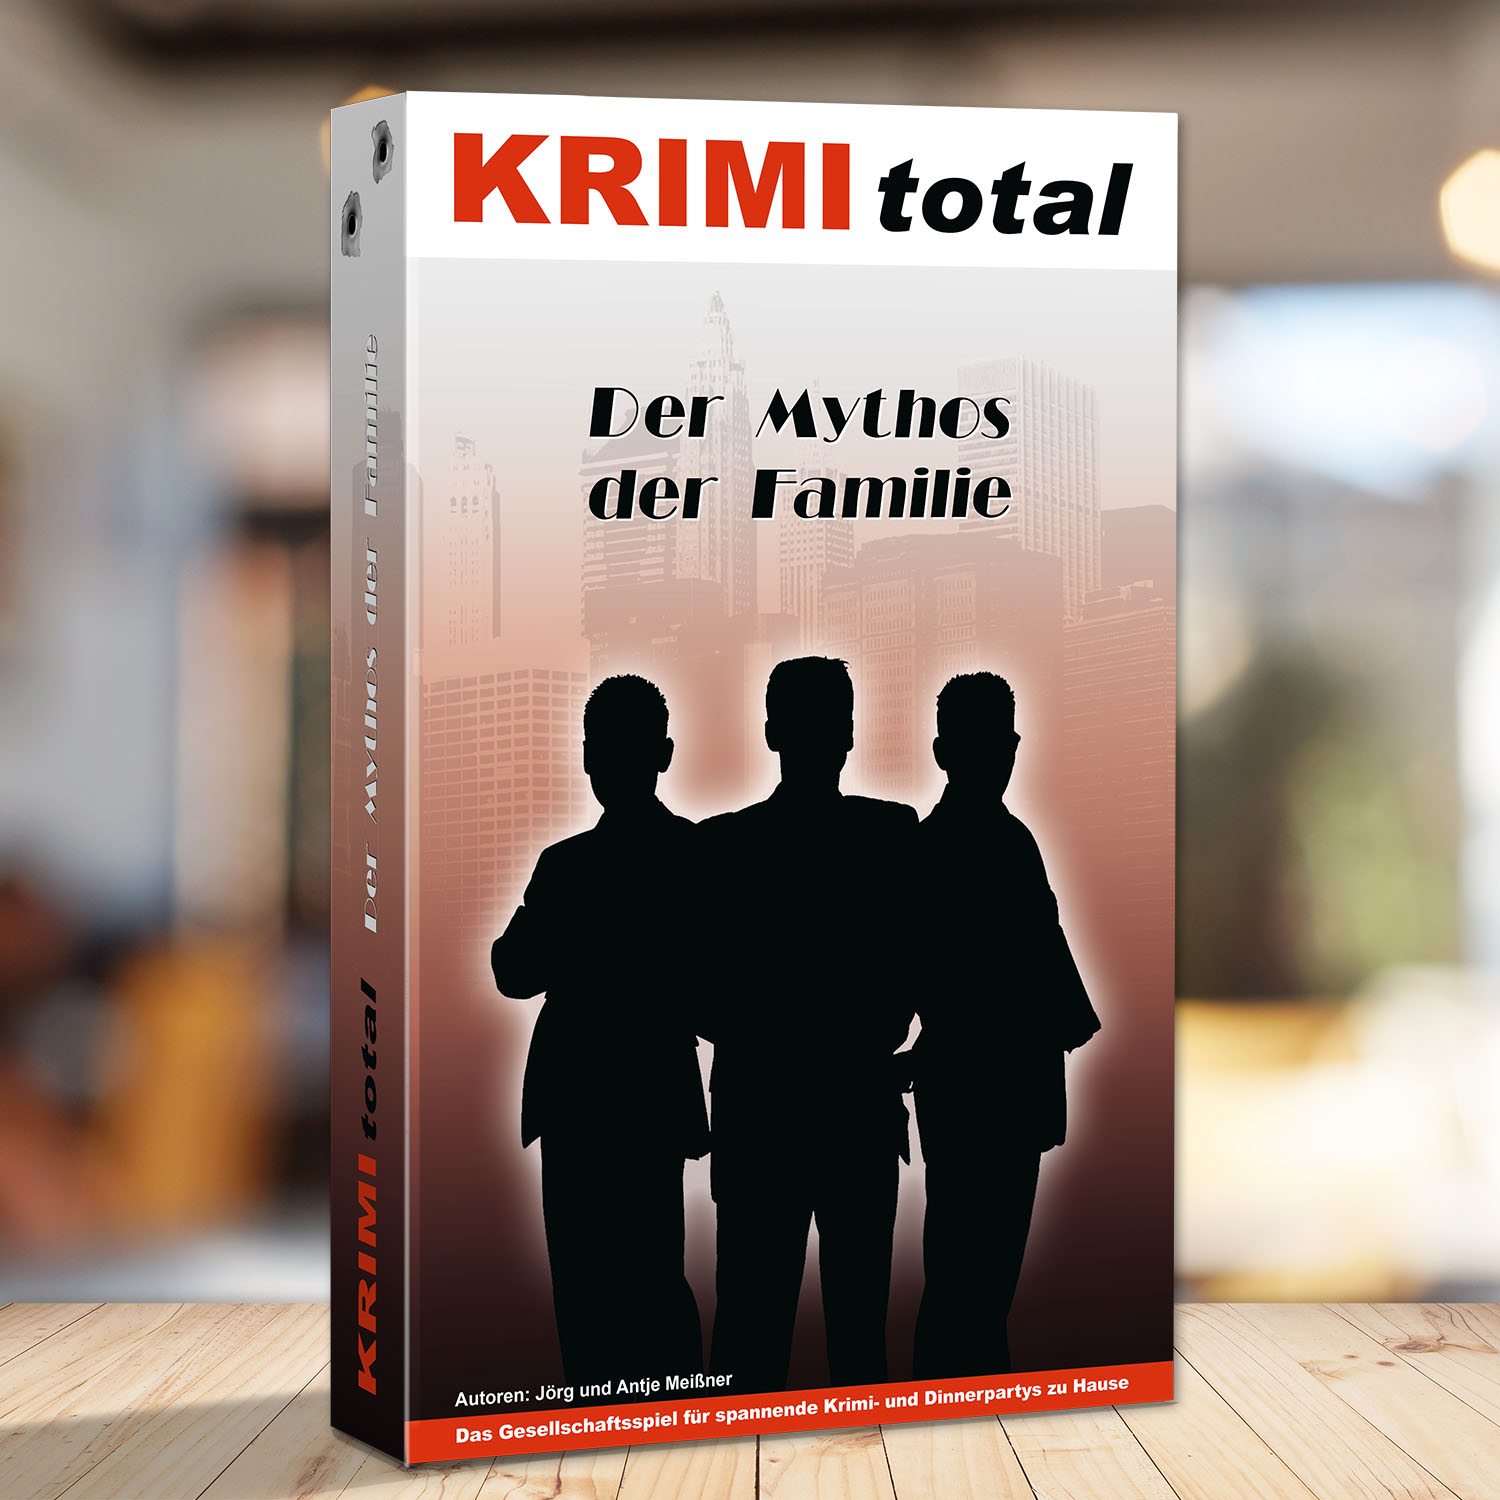 Abbildung eines Spielkartons des Krimidinner Spiels "KRIMI total - Der Mythos der Familie"